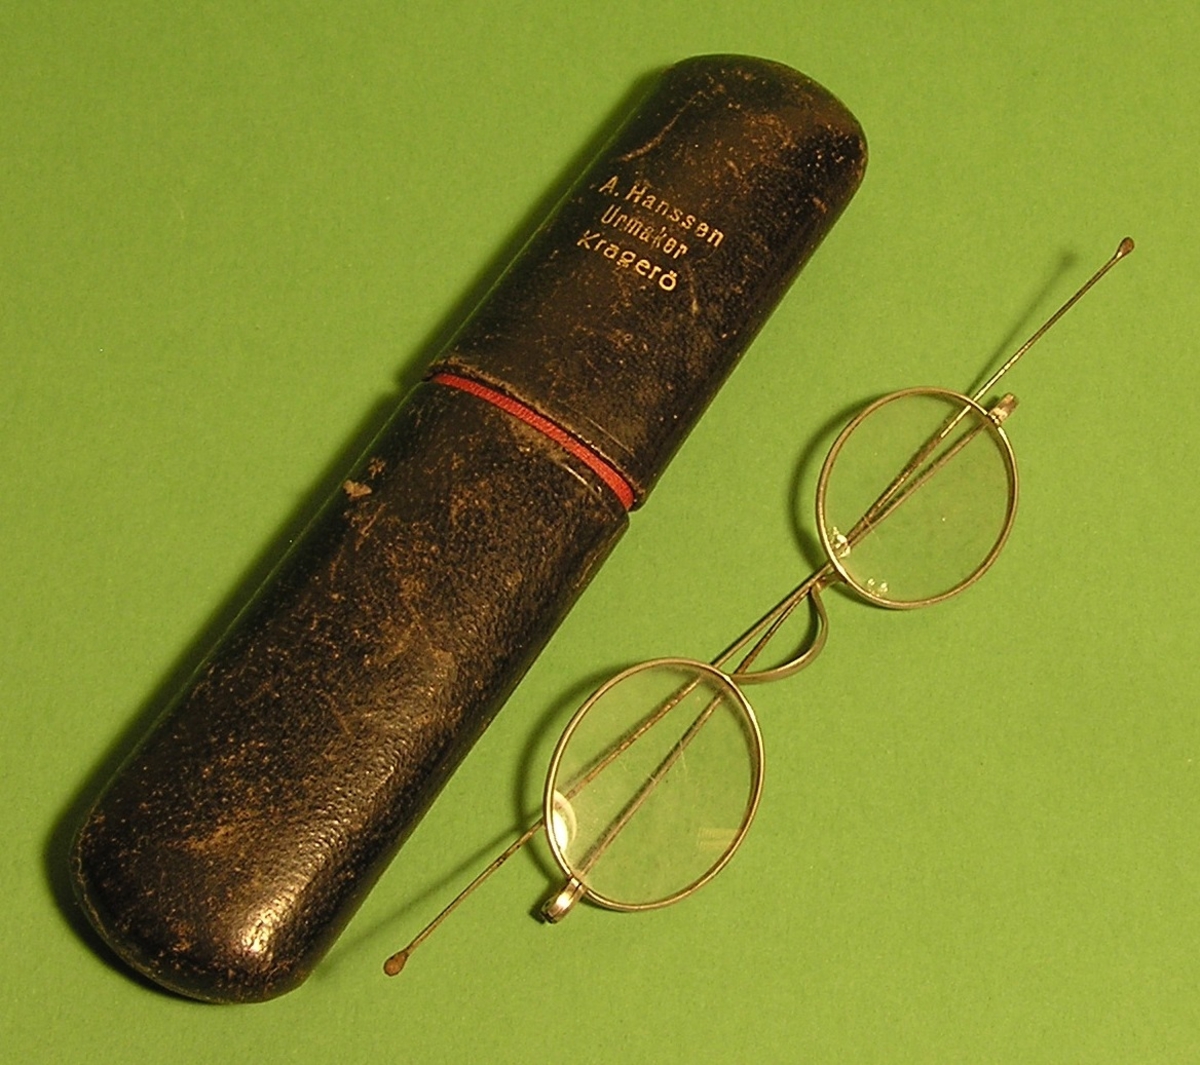 Oval tverrsnitt. Slank brillehus med briller. Briller har lange og  lett buet stenger.